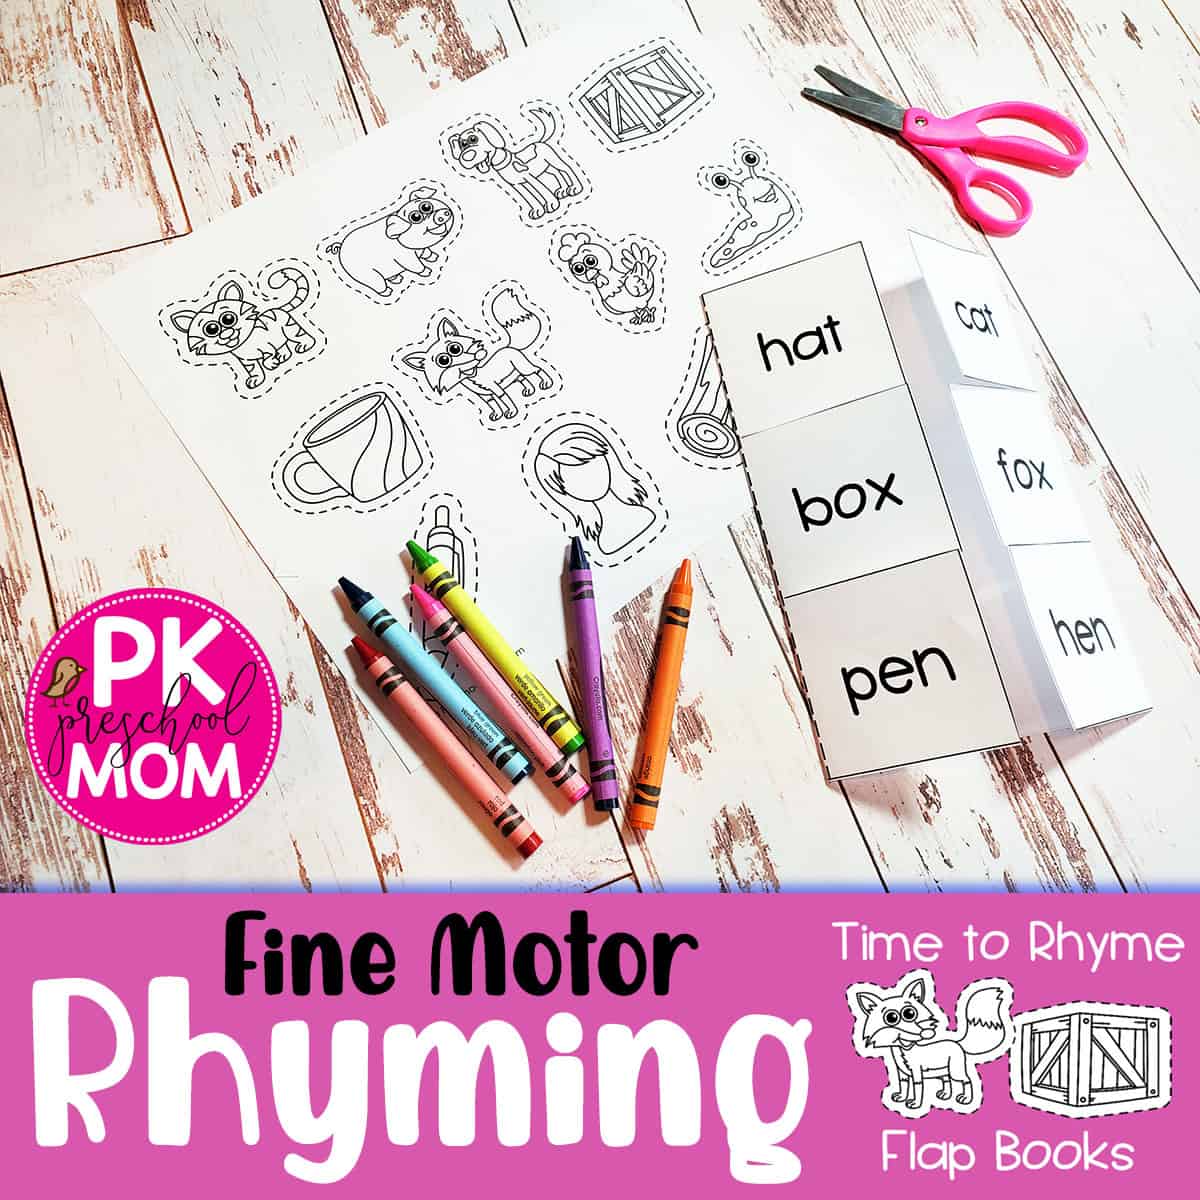 Rhyming Activities for Preschool - Preschool Mom